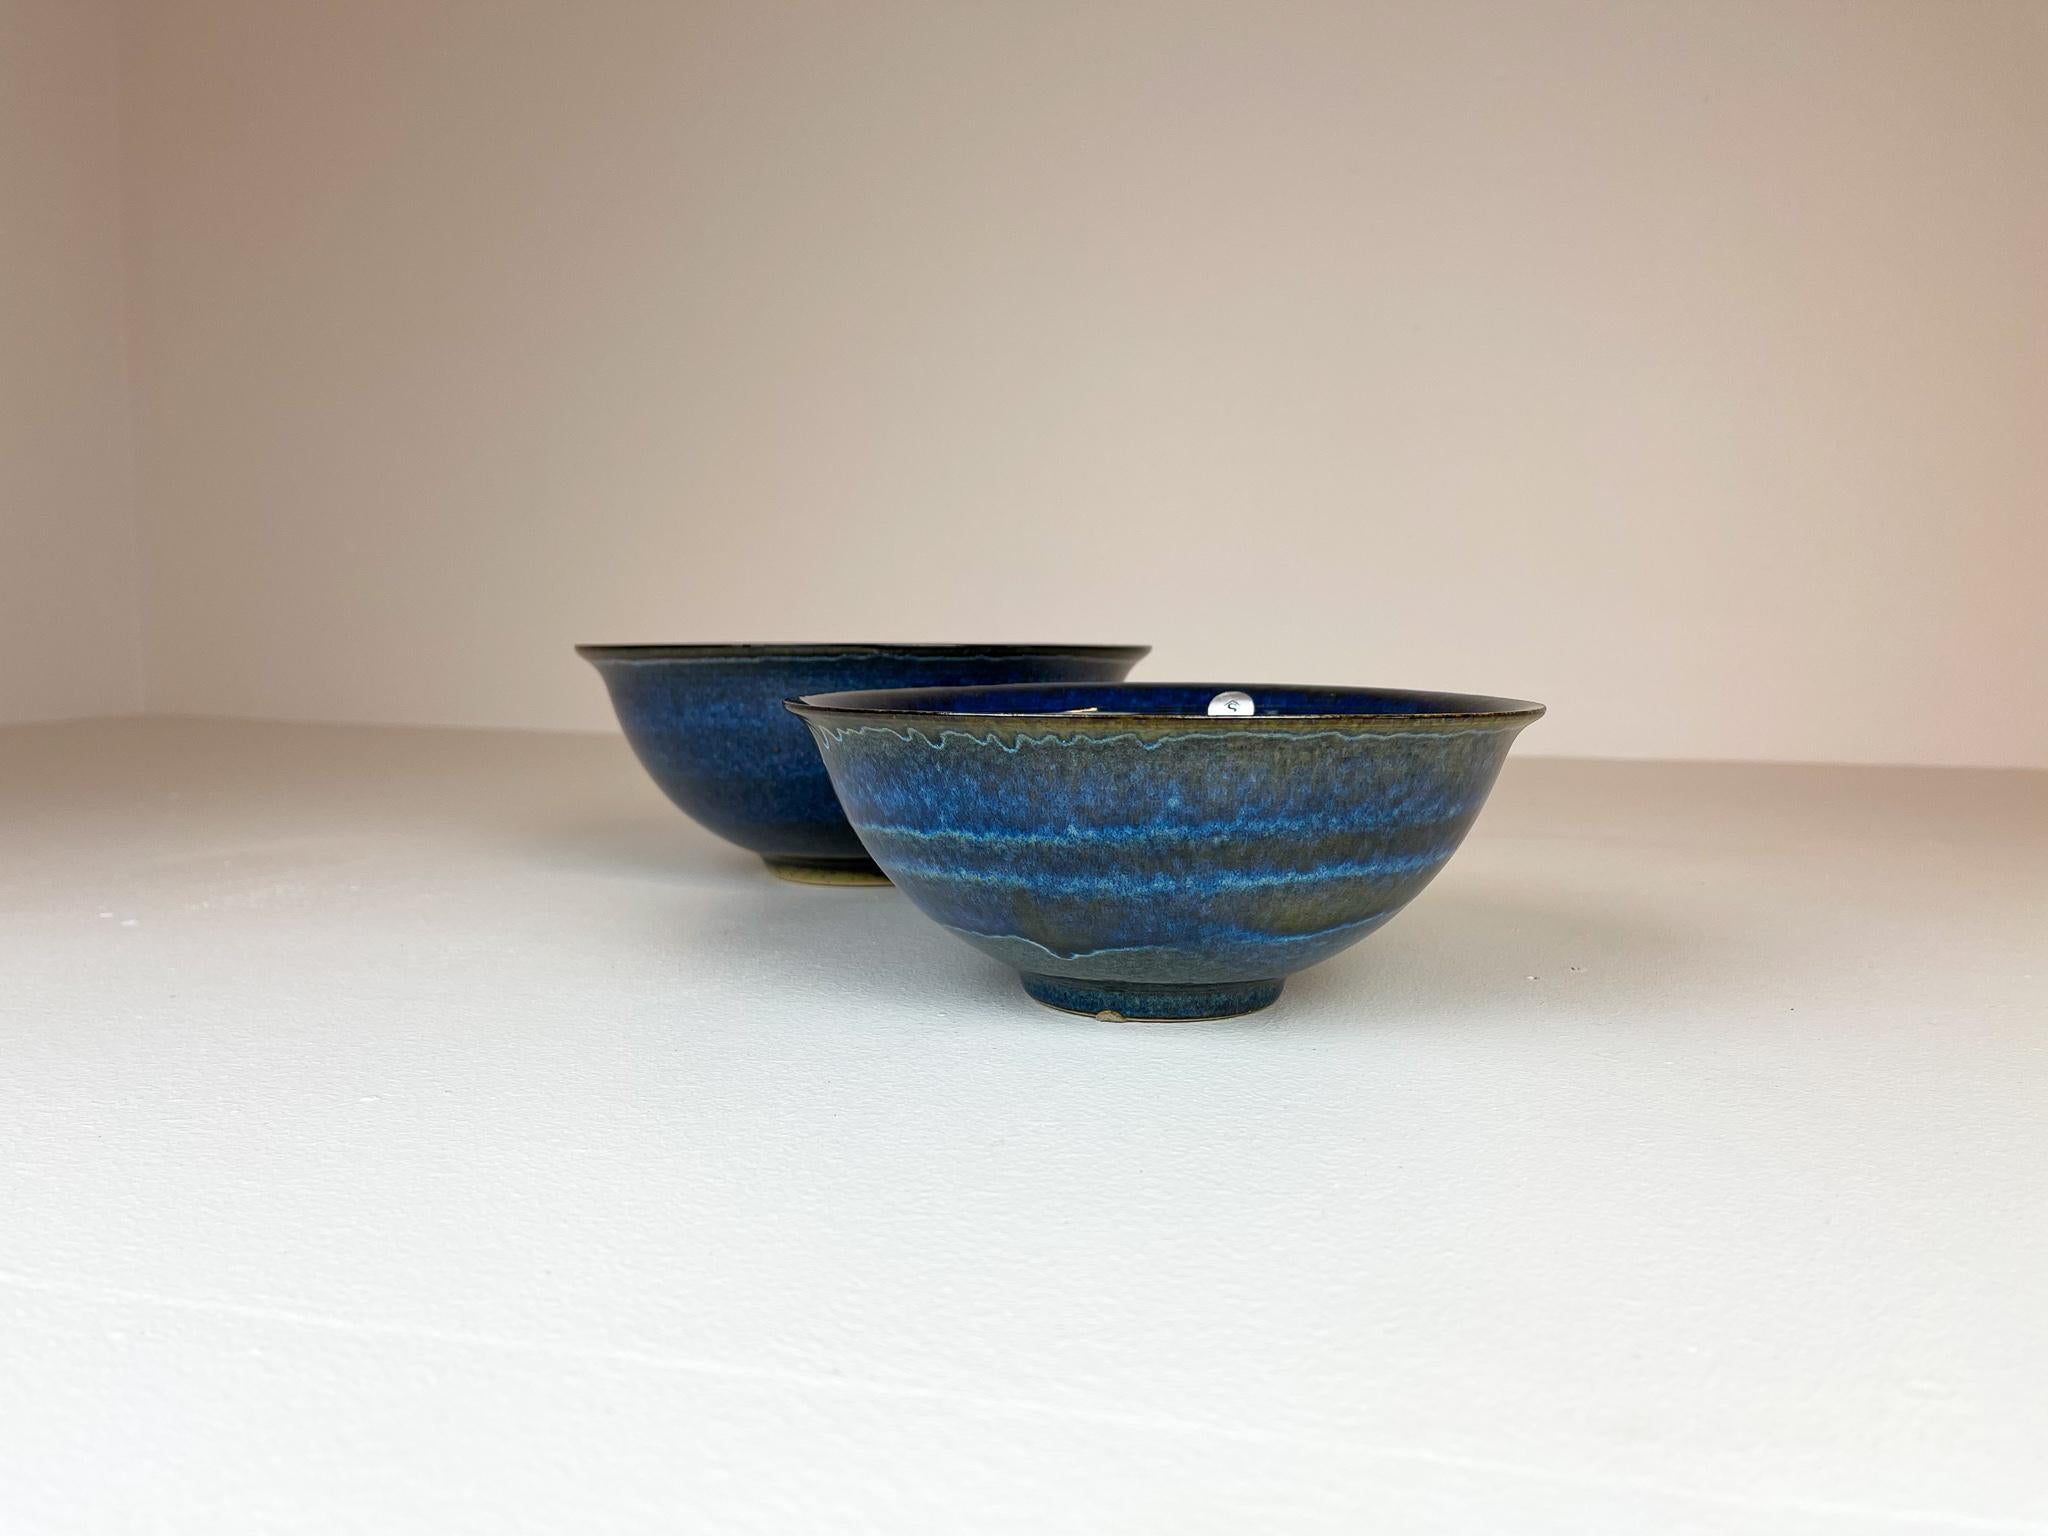 Scandinavian Modern Ceramic Bowls by Carl-Harry Stålhane Design Huset, Sweden For Sale 3